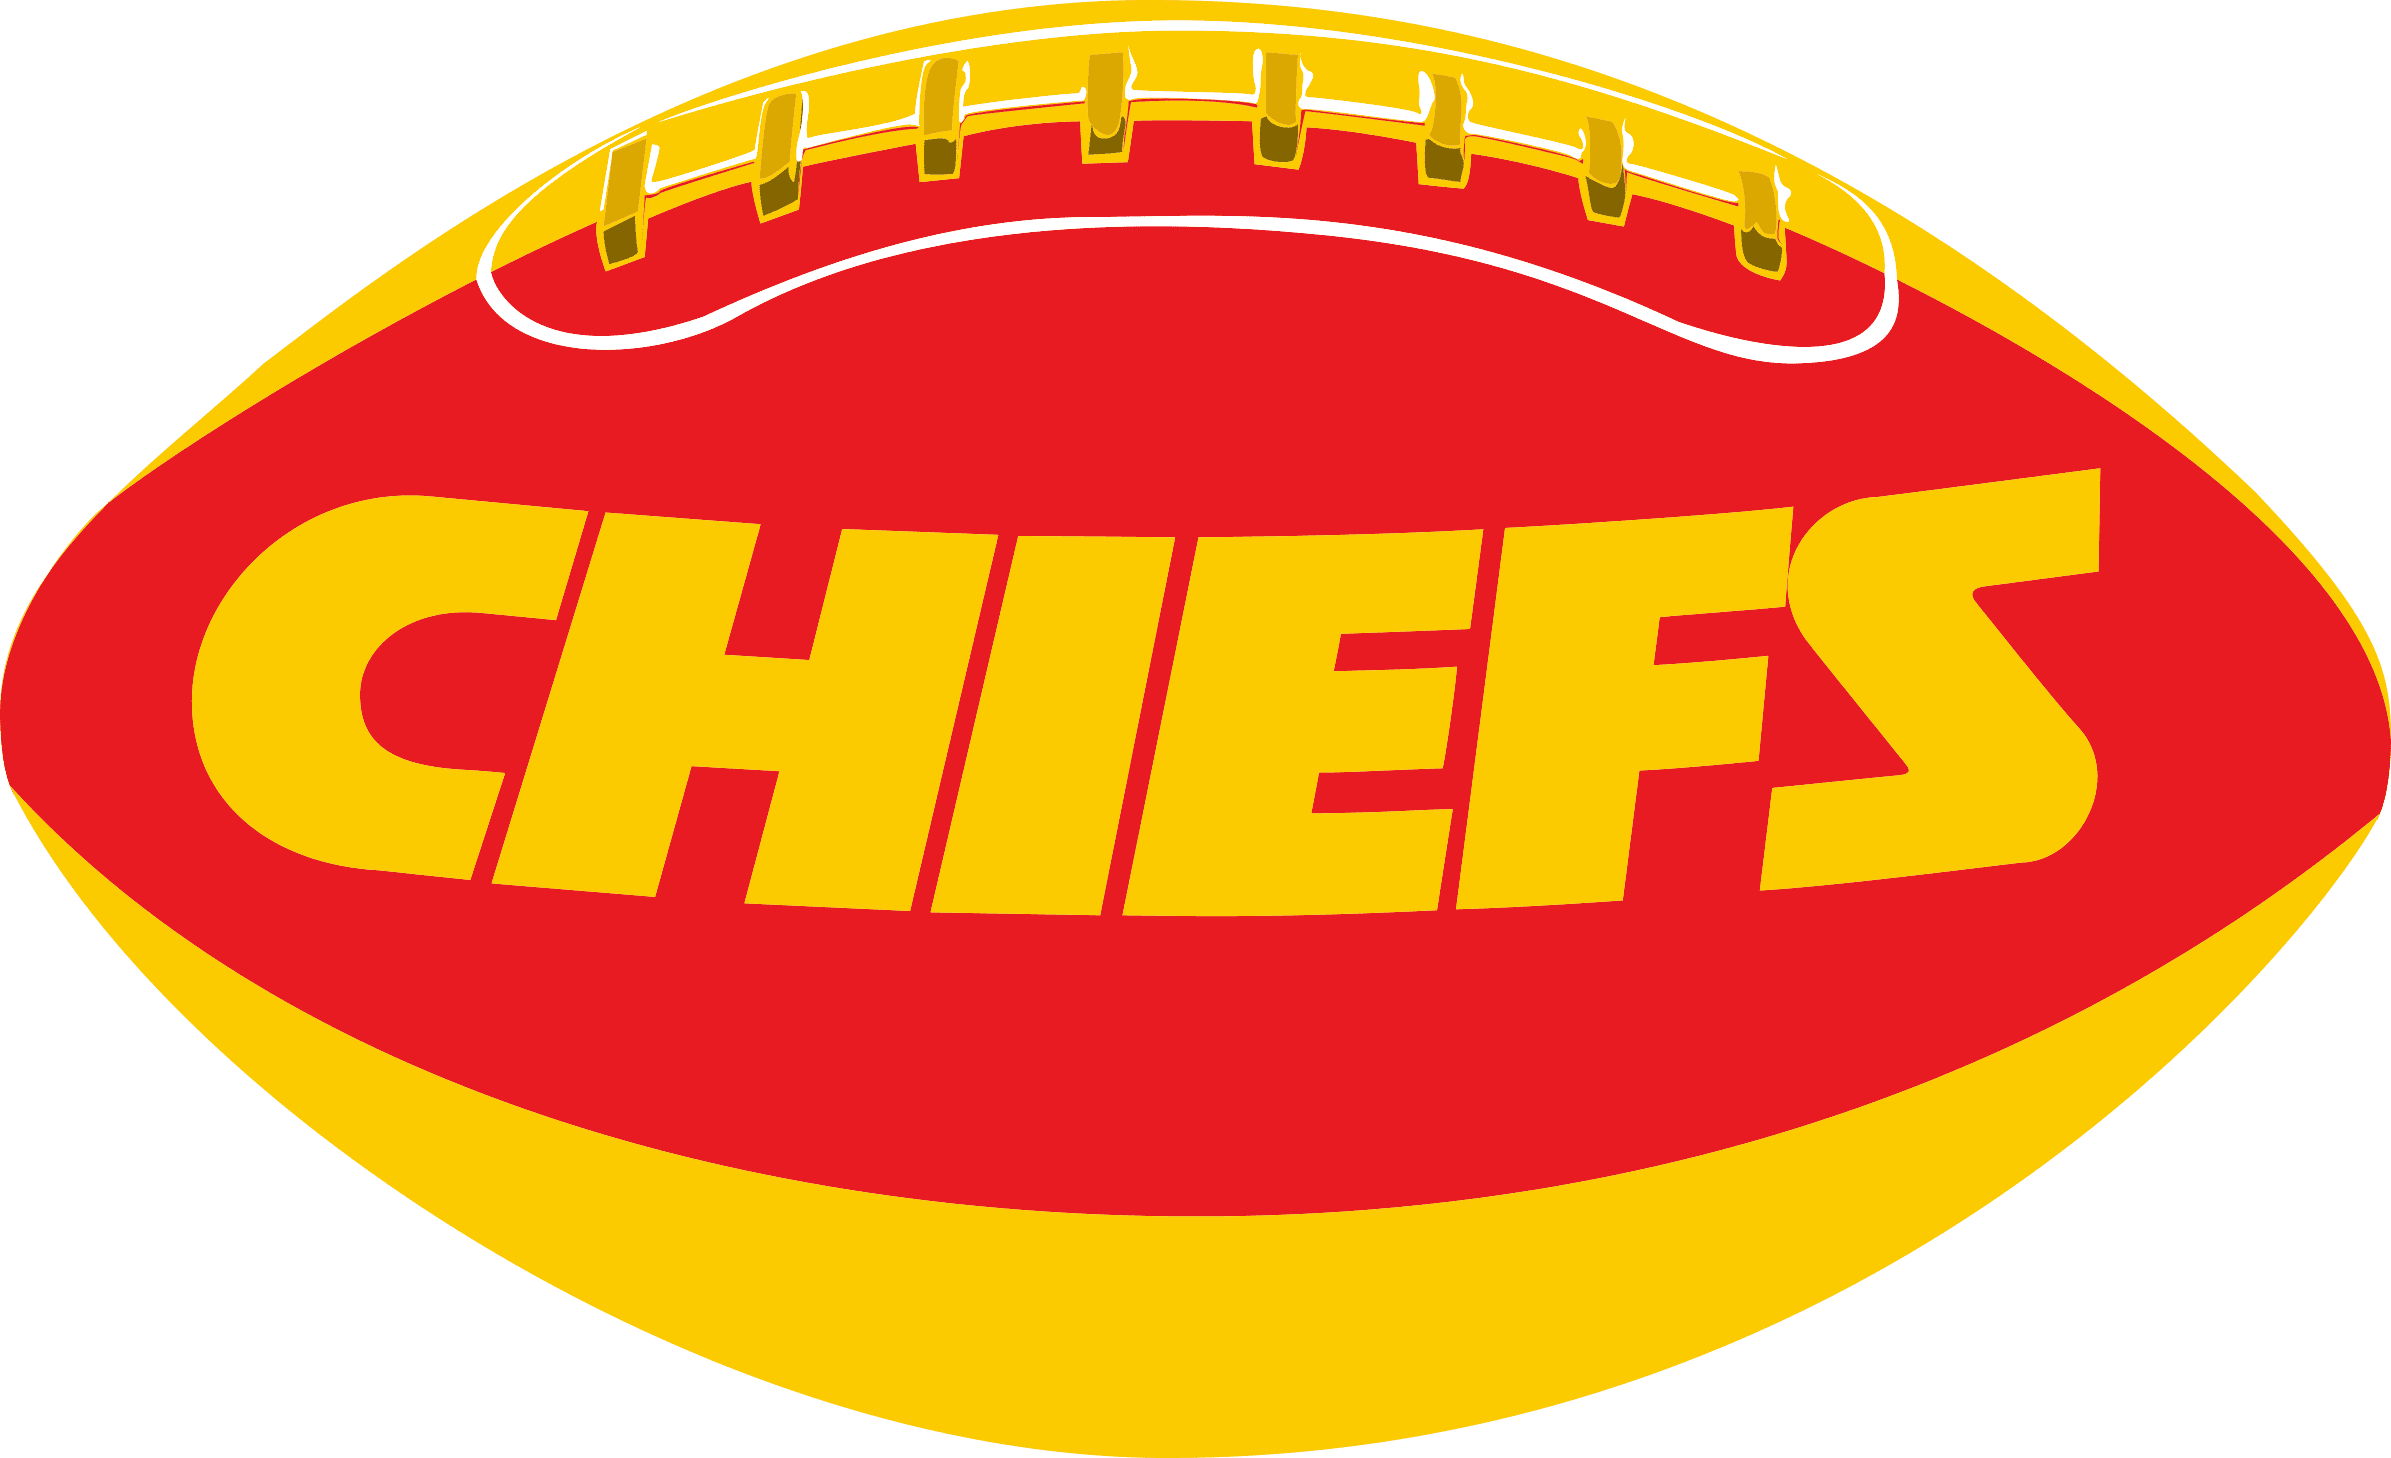 Kansas City Chiefs Logo Embroidery Design File - NFL Logo